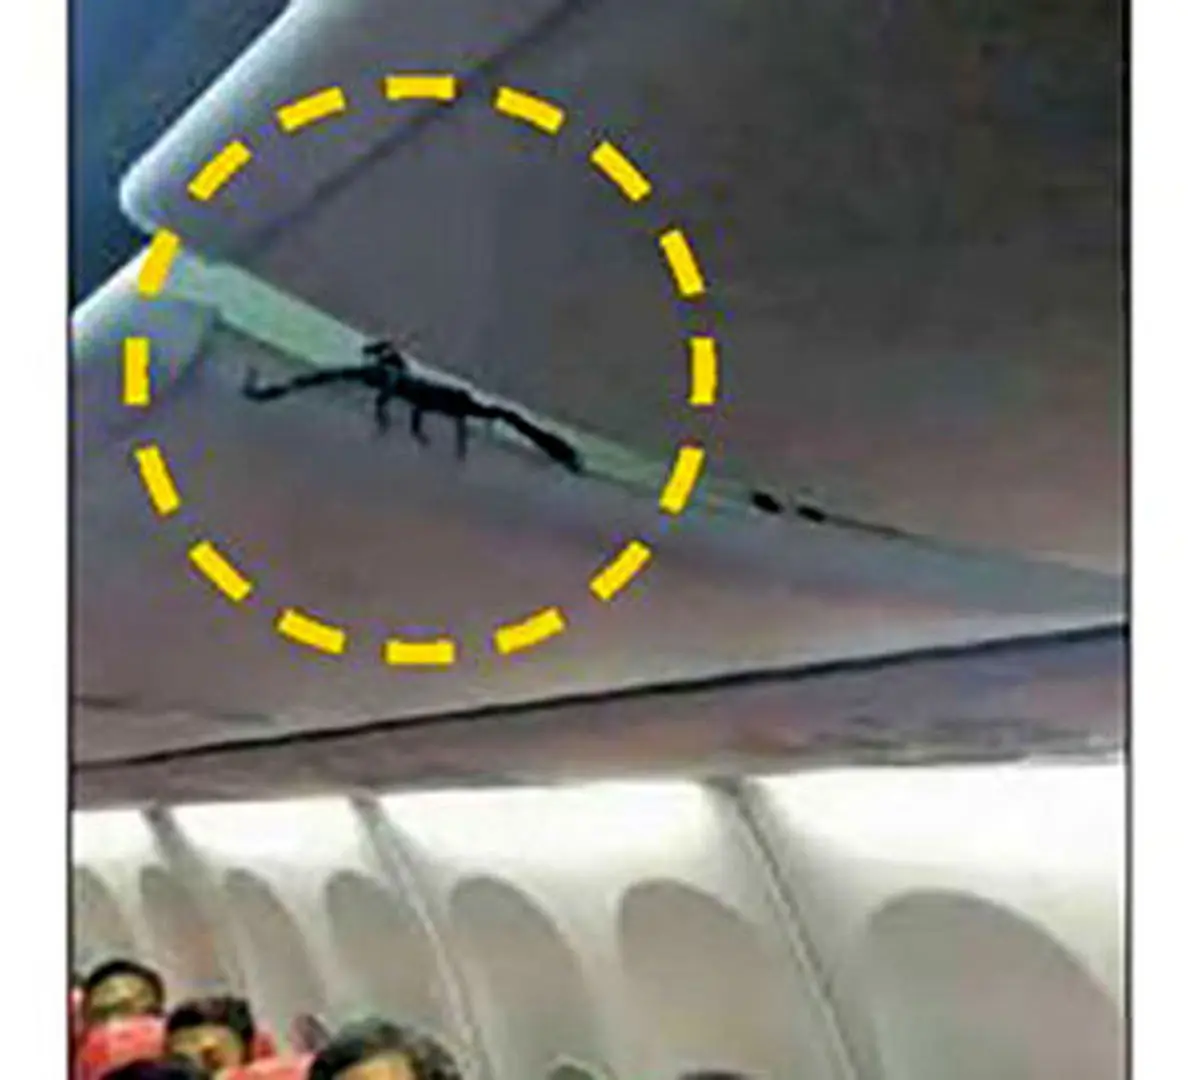 وحشت مسافران از موجود خطرناکی که از سقف هواپیما آویزان بود+عکس 